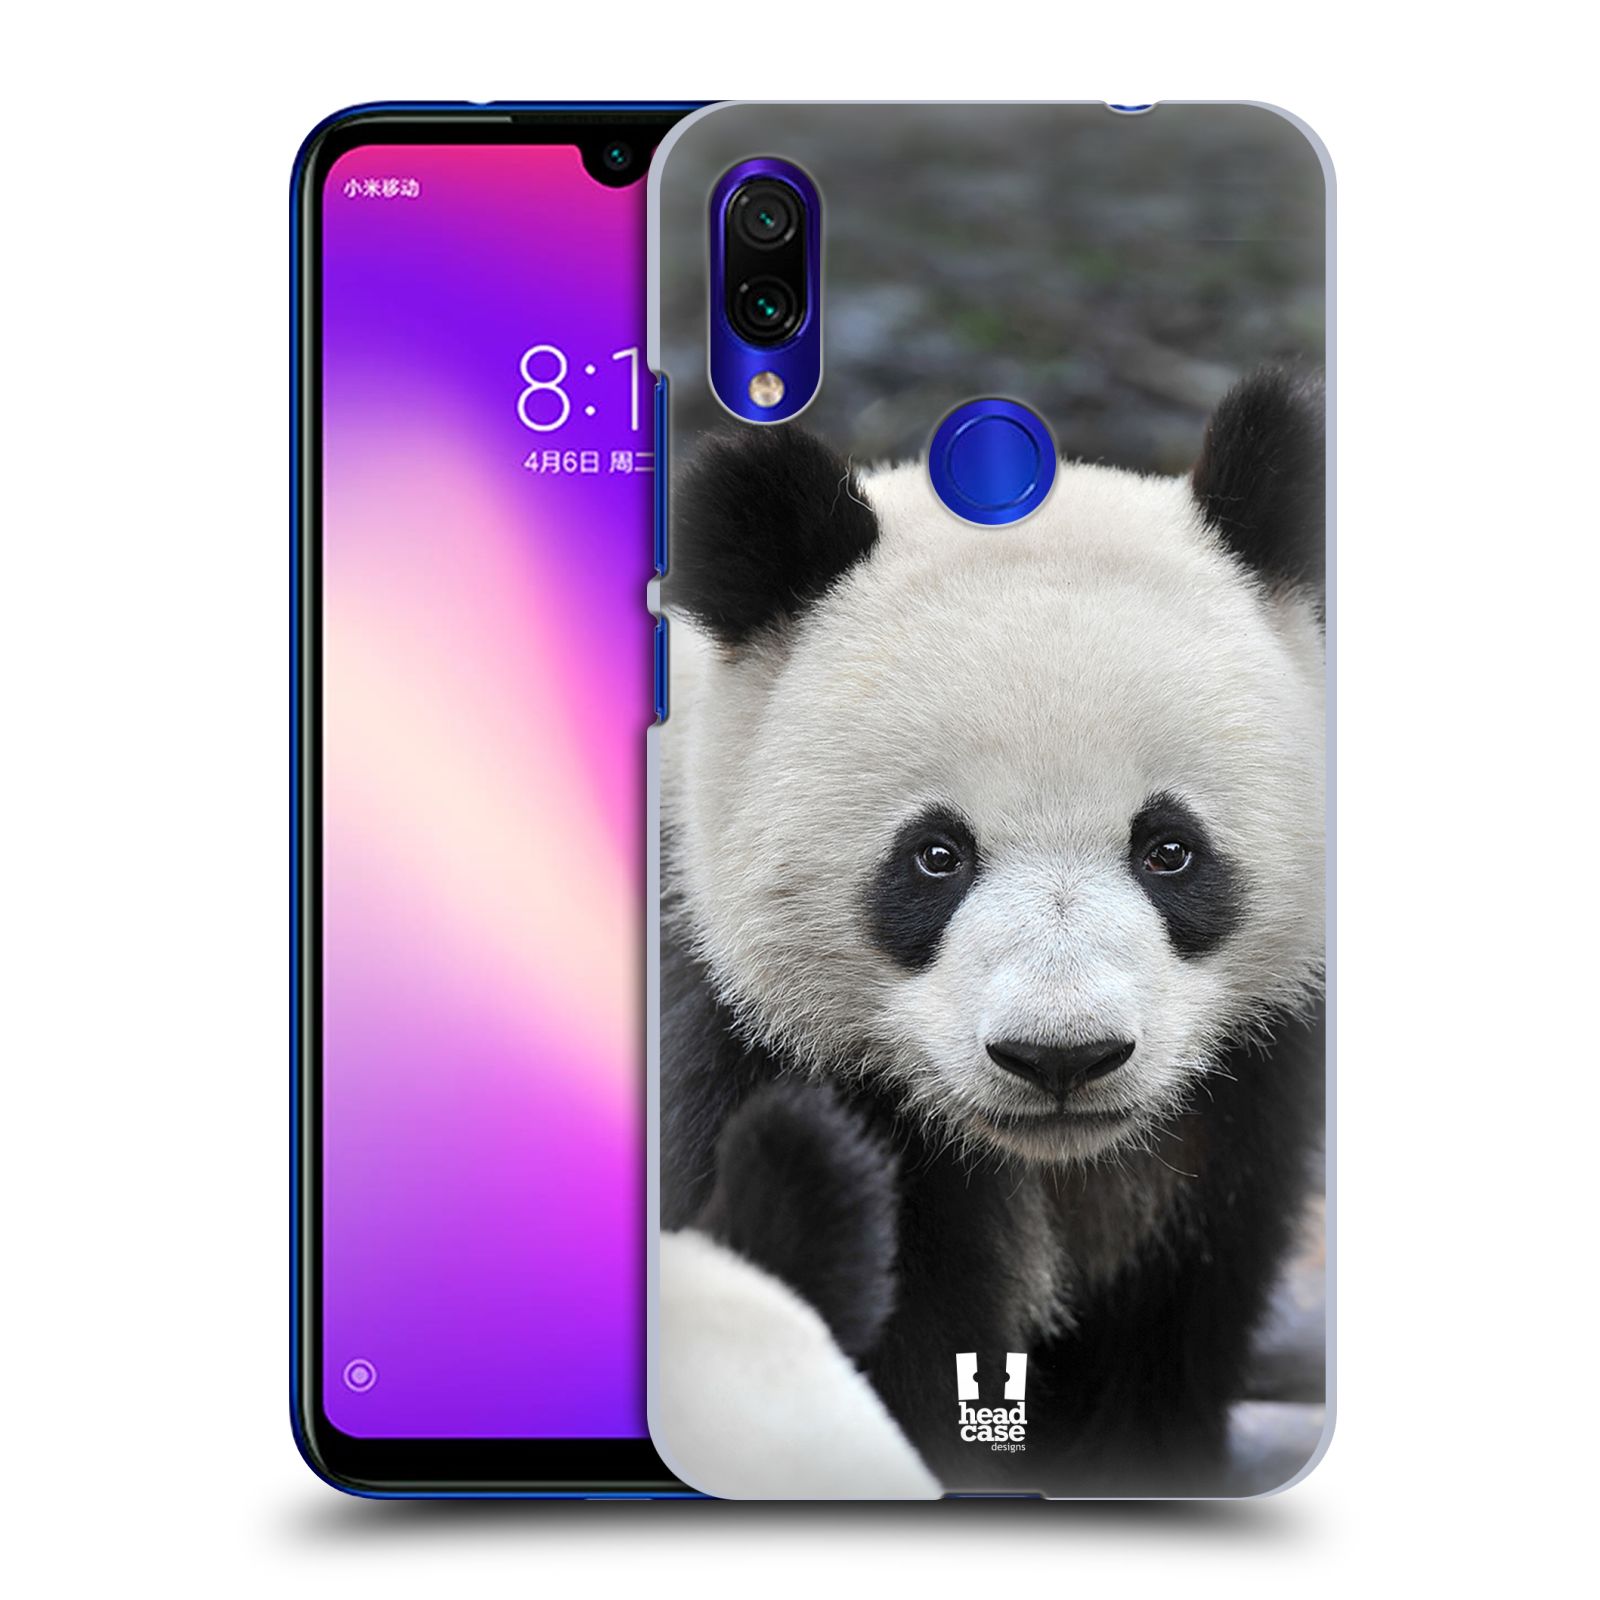 Zadní obal pro mobil Xiaomi Redmi Note 7 / 7 Pro - HEAD CASE - Svět zvířat medvěd panda